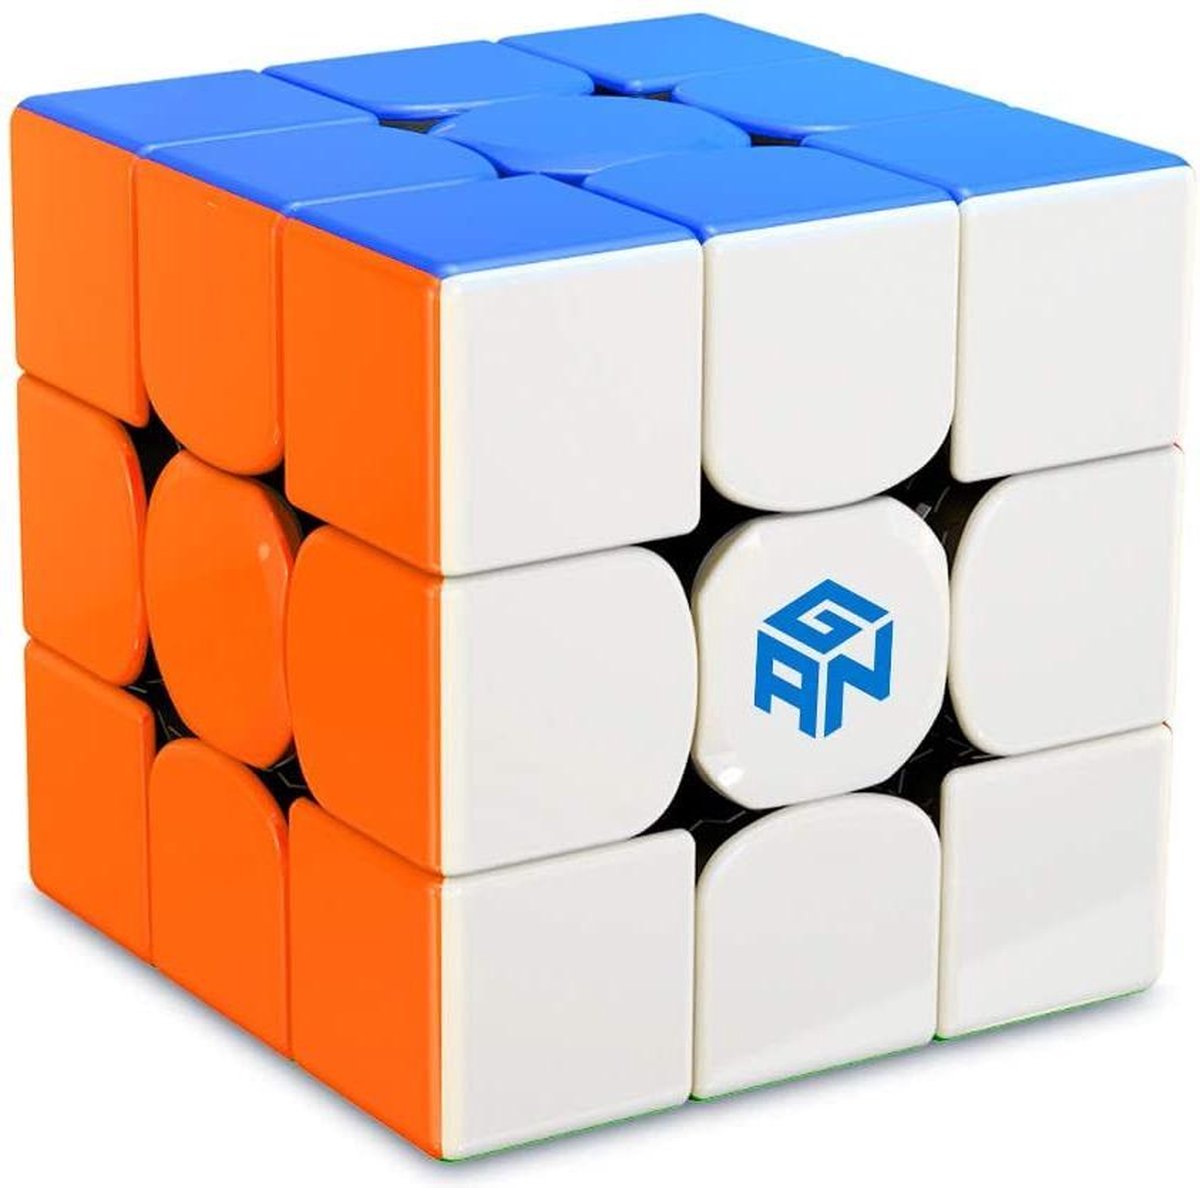 GAN 356 R S Professionele Speed Cube - 3x3 - Magic Puzzle - Puzzel Kubus - GAN